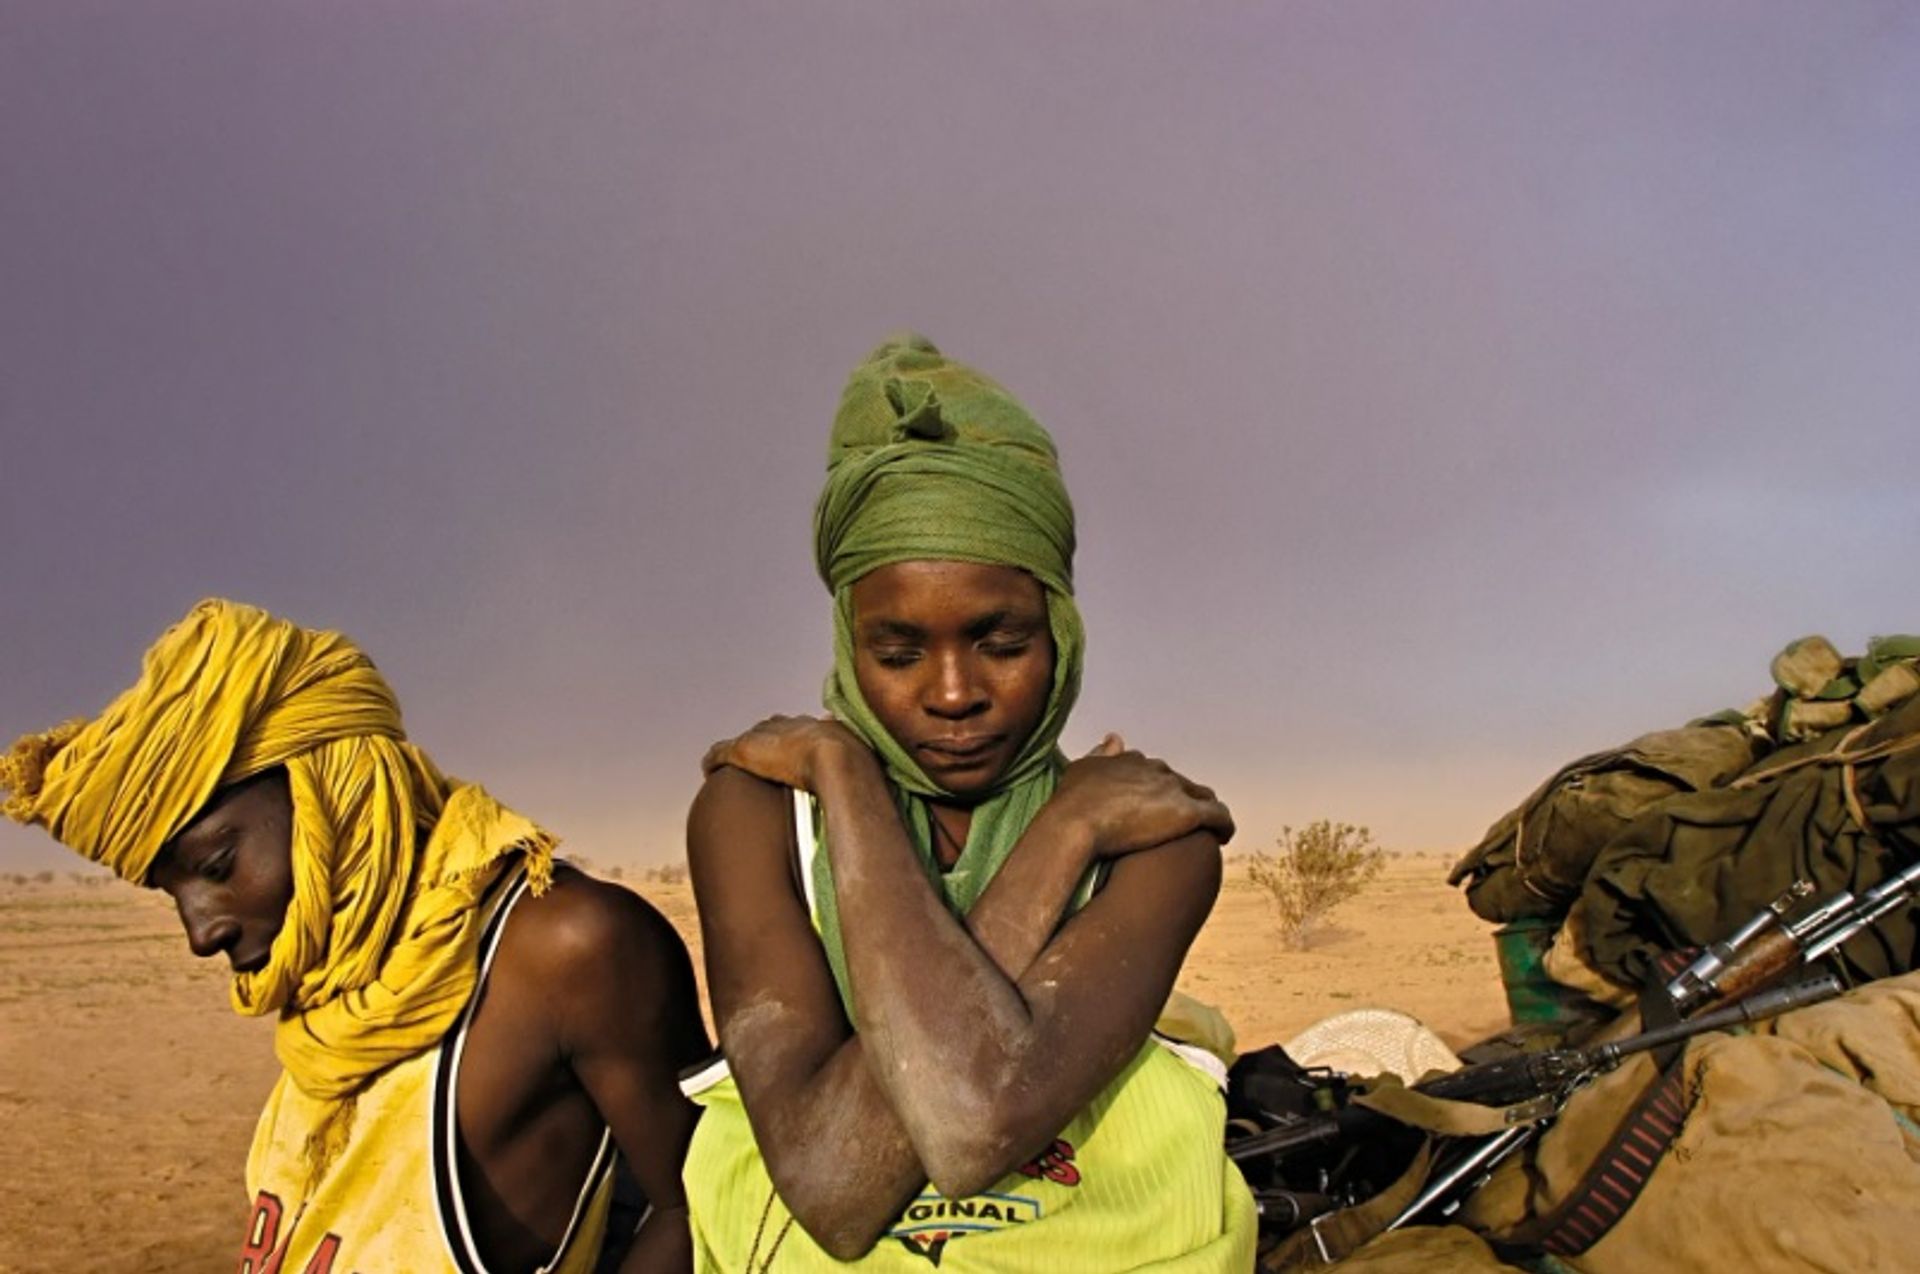 חיילים בצבא השחרור העממי של סודאן יושבים ליד המשאית שלהם ומחכים לתיקון, כאשר סופת חול מתקרבת בדארפור, סודן - אוגוסט 2004.

לינזי אדריו